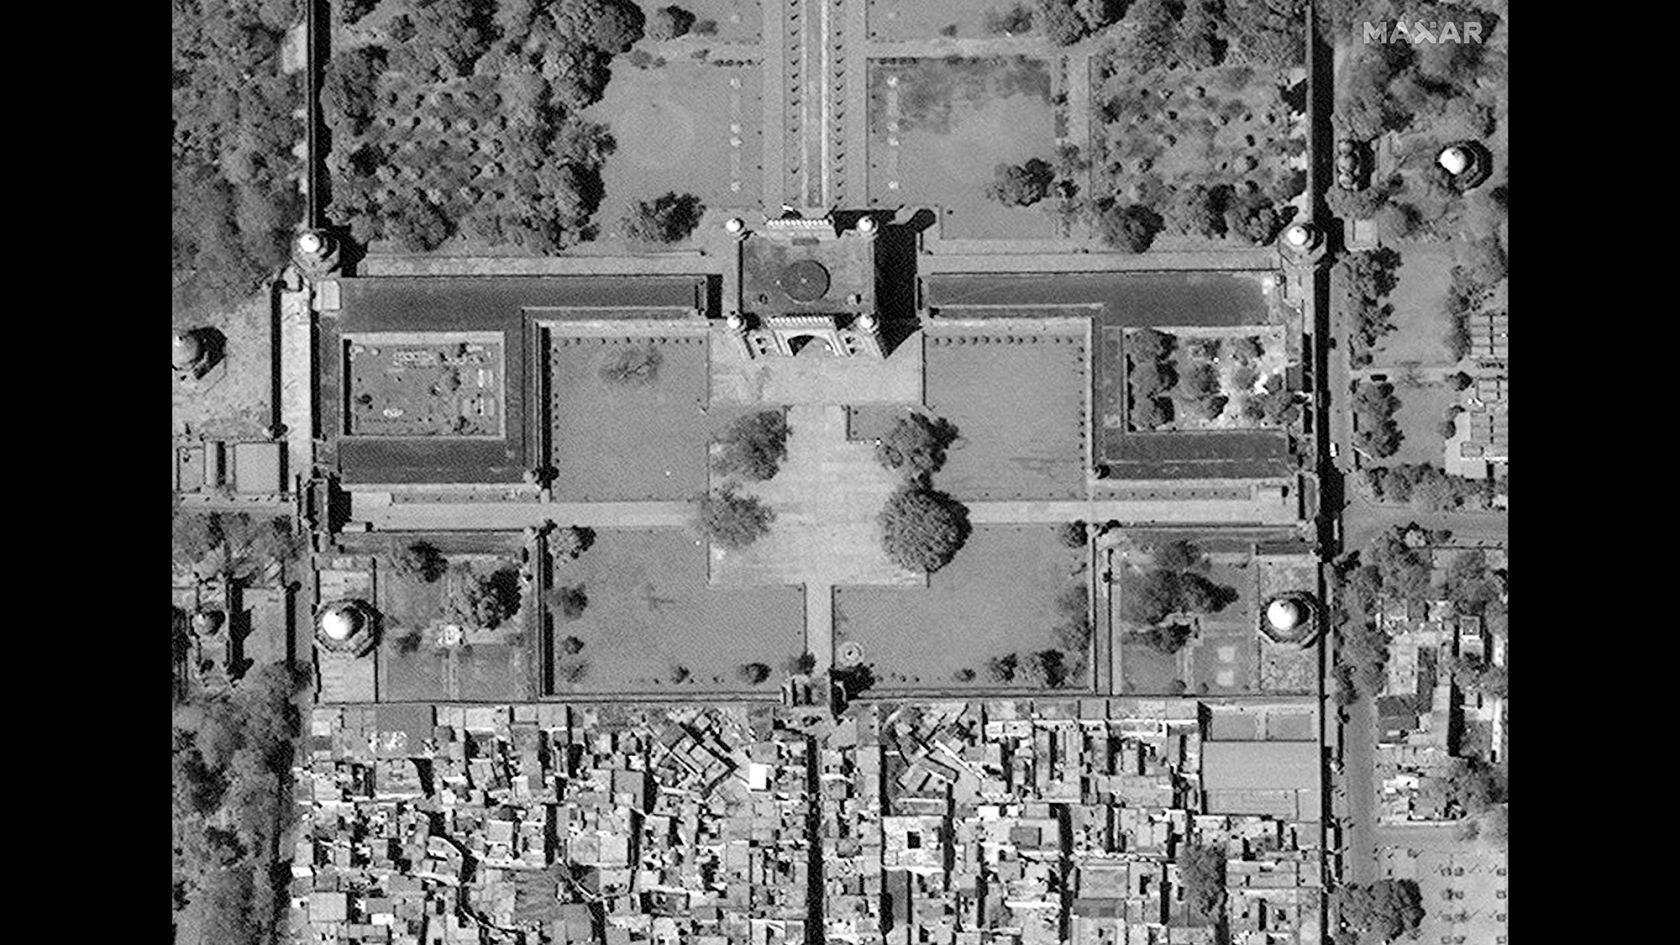 Снимки со спутника 1995 года